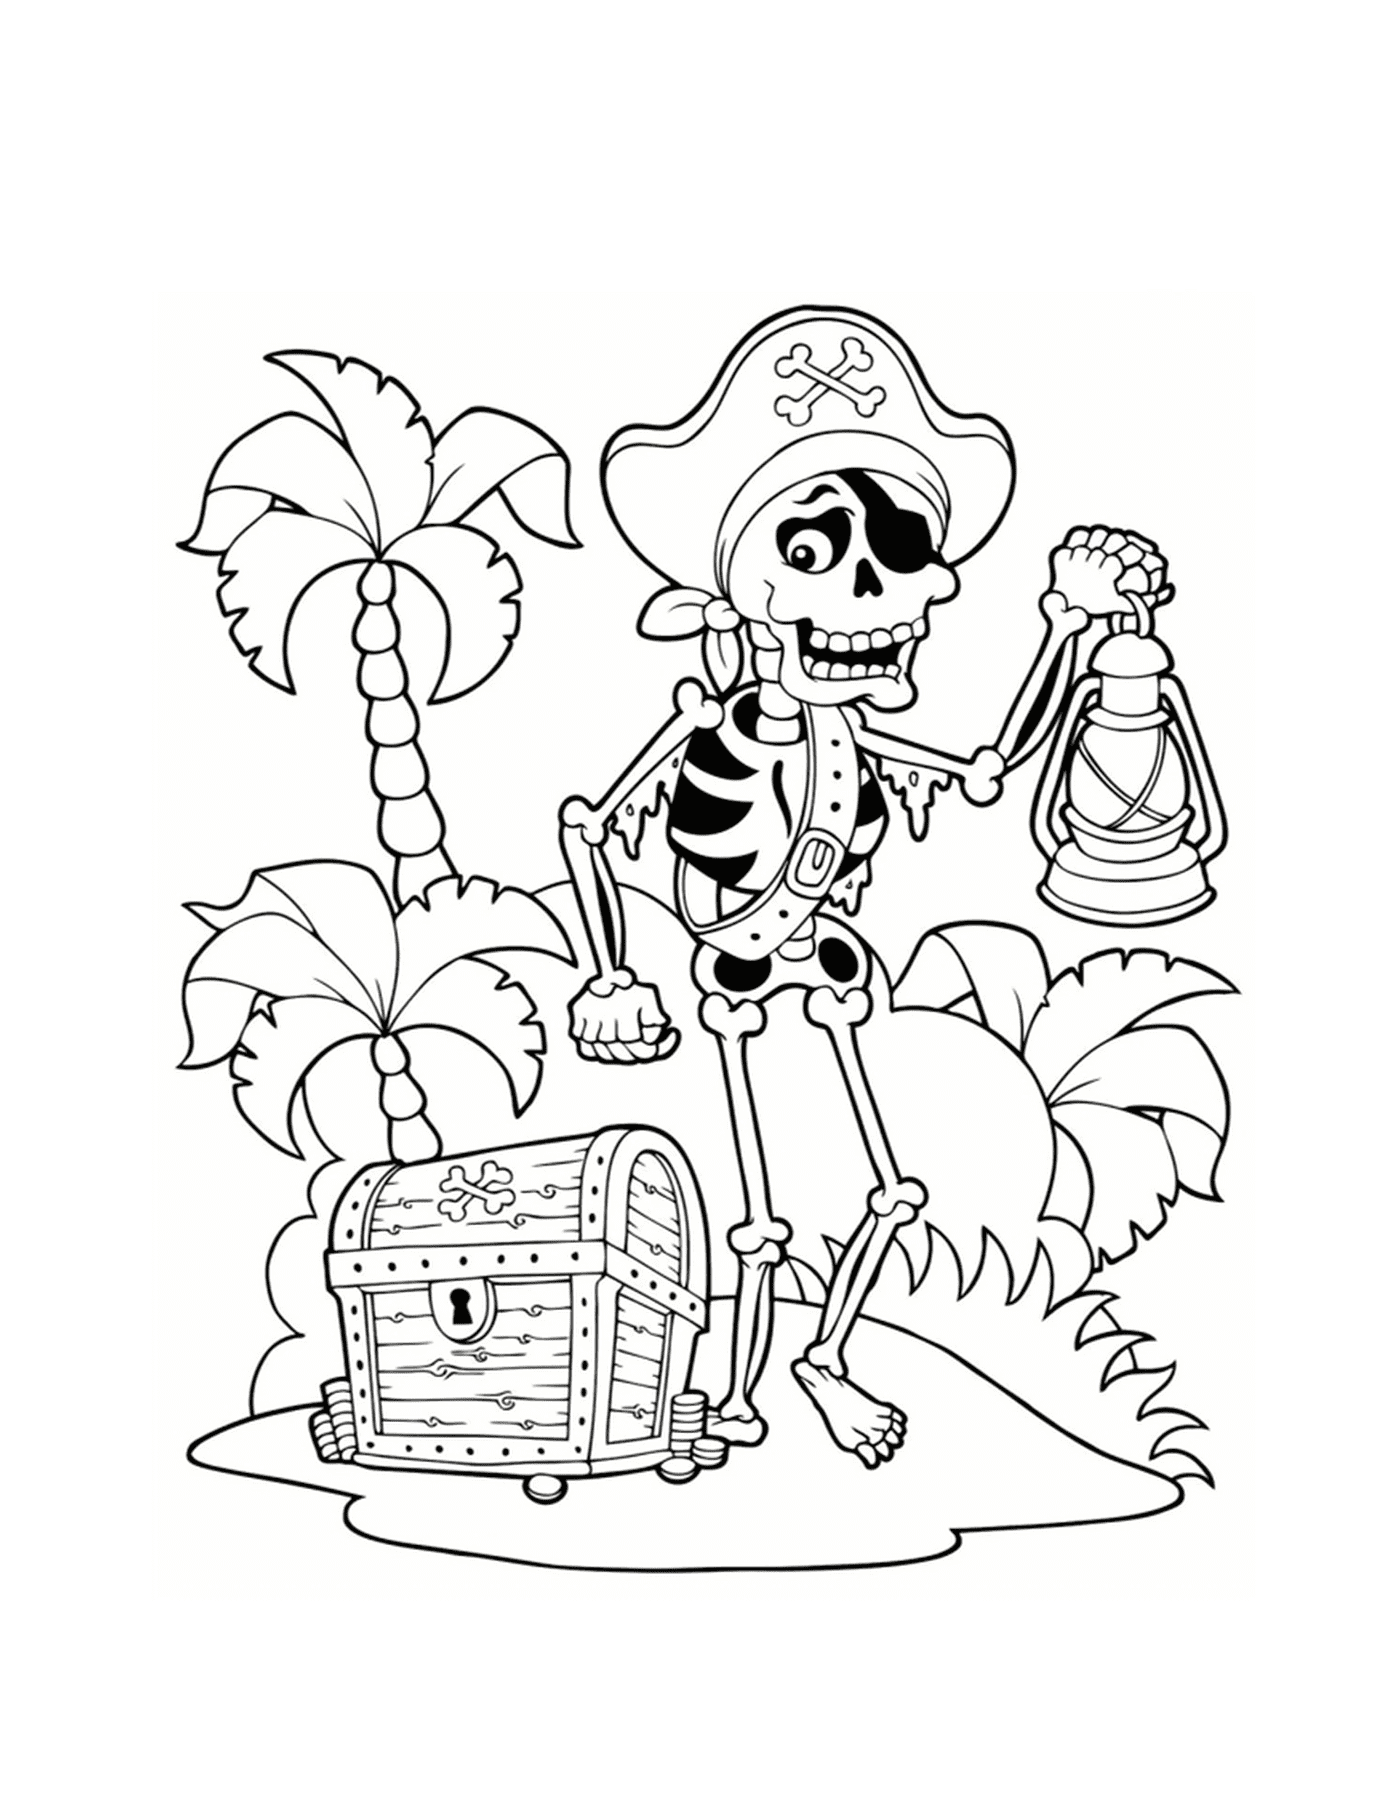  Esqueleto pirata, tesouro na ilha 